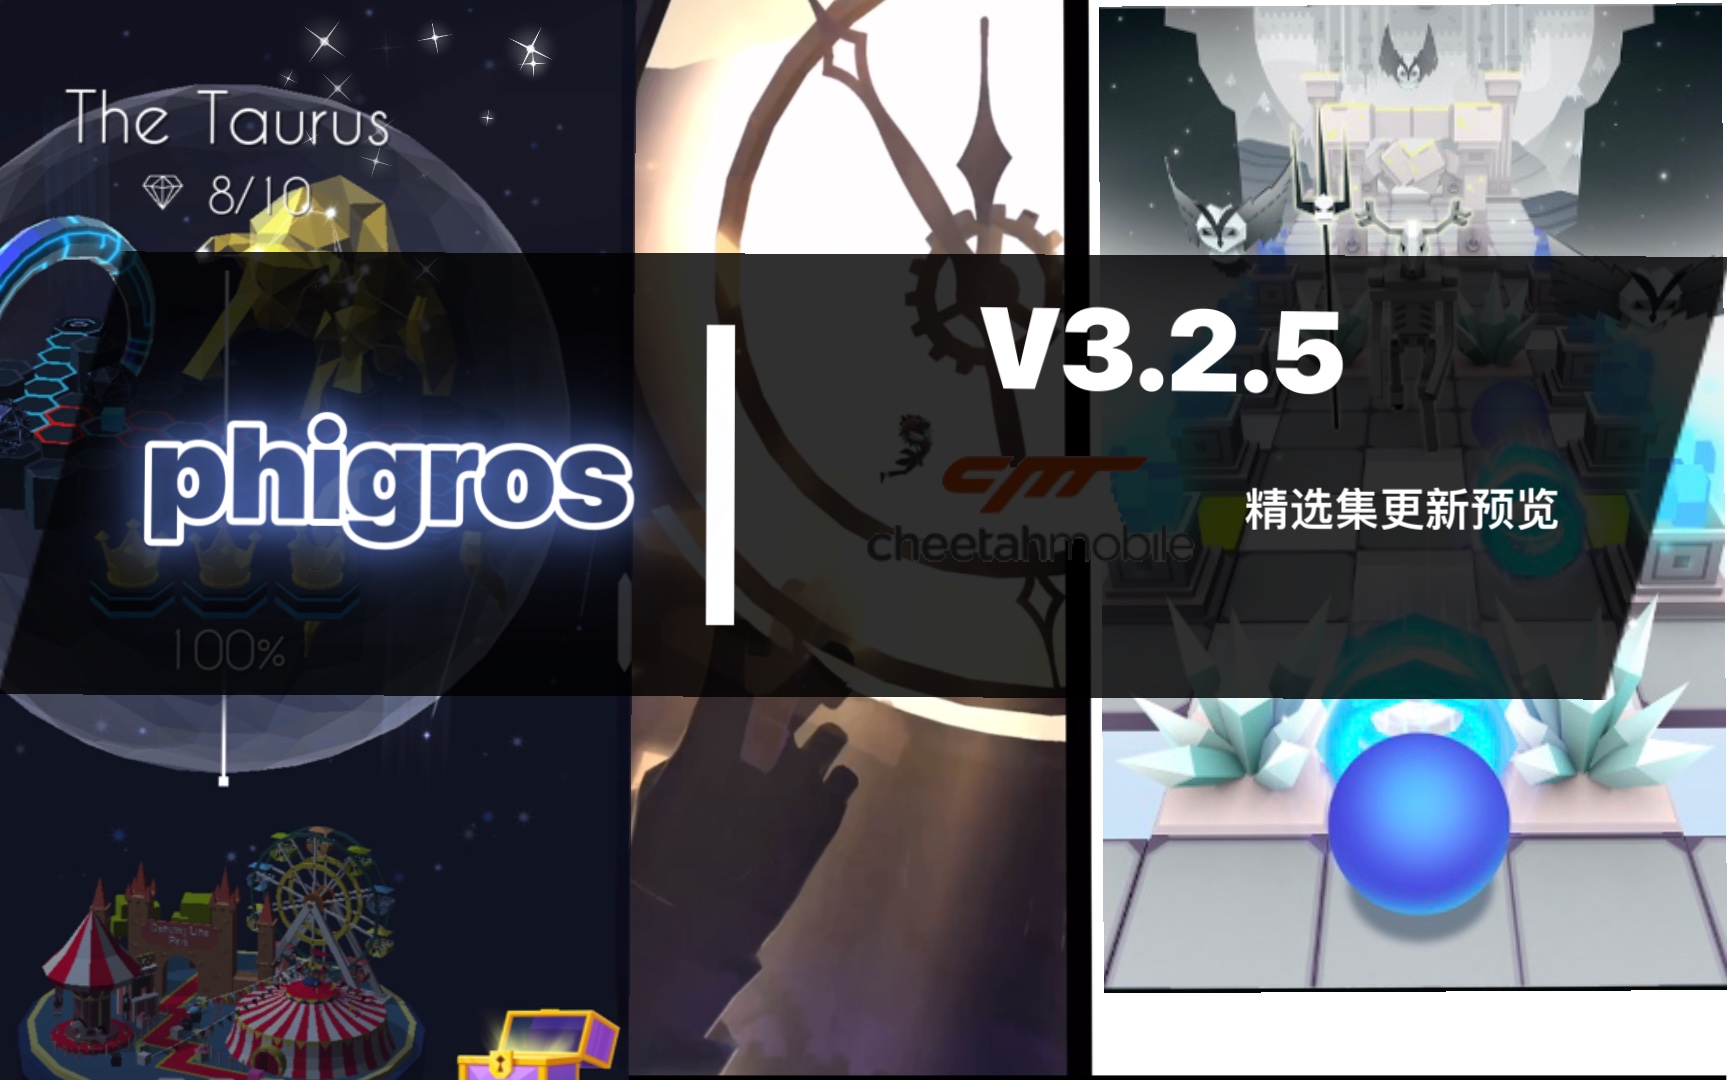 【phigros】3.2.5联动章节更新曲目预览